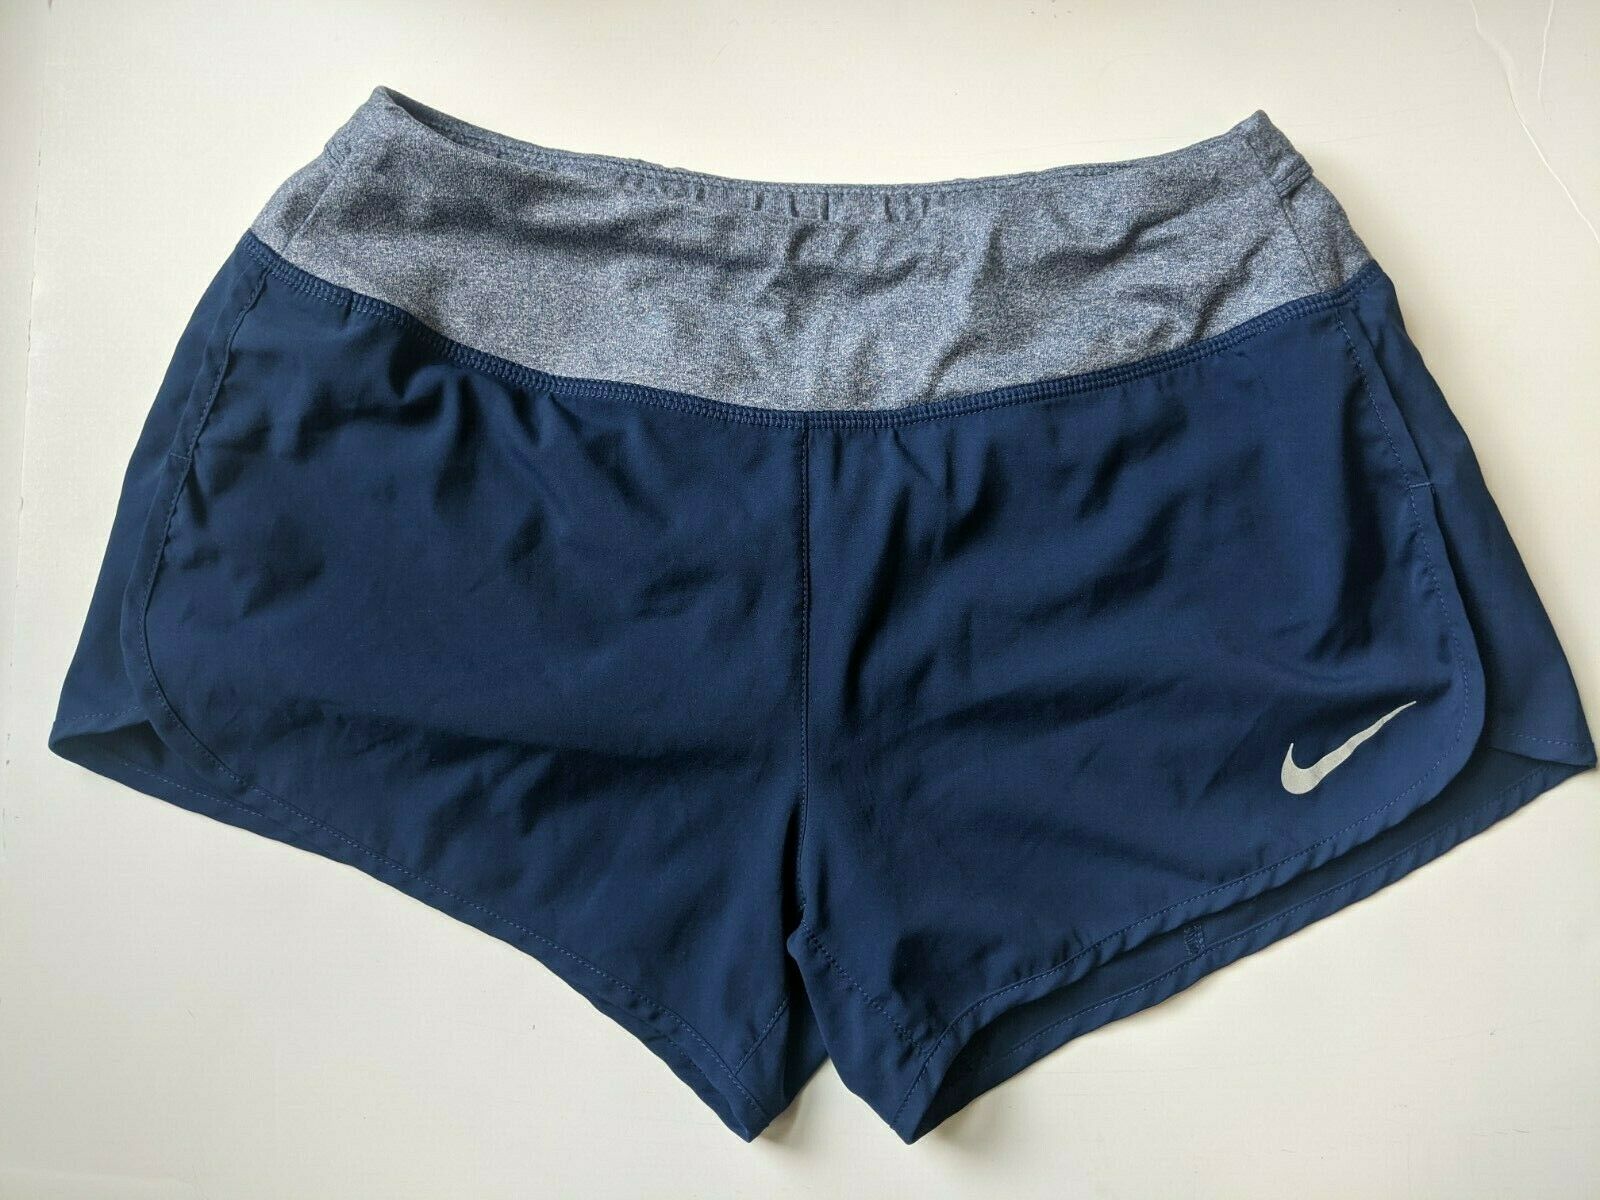 Nike Dri Fit Shorts Small Blue Grey Rn56323 Insert Lining Zipper Pocket